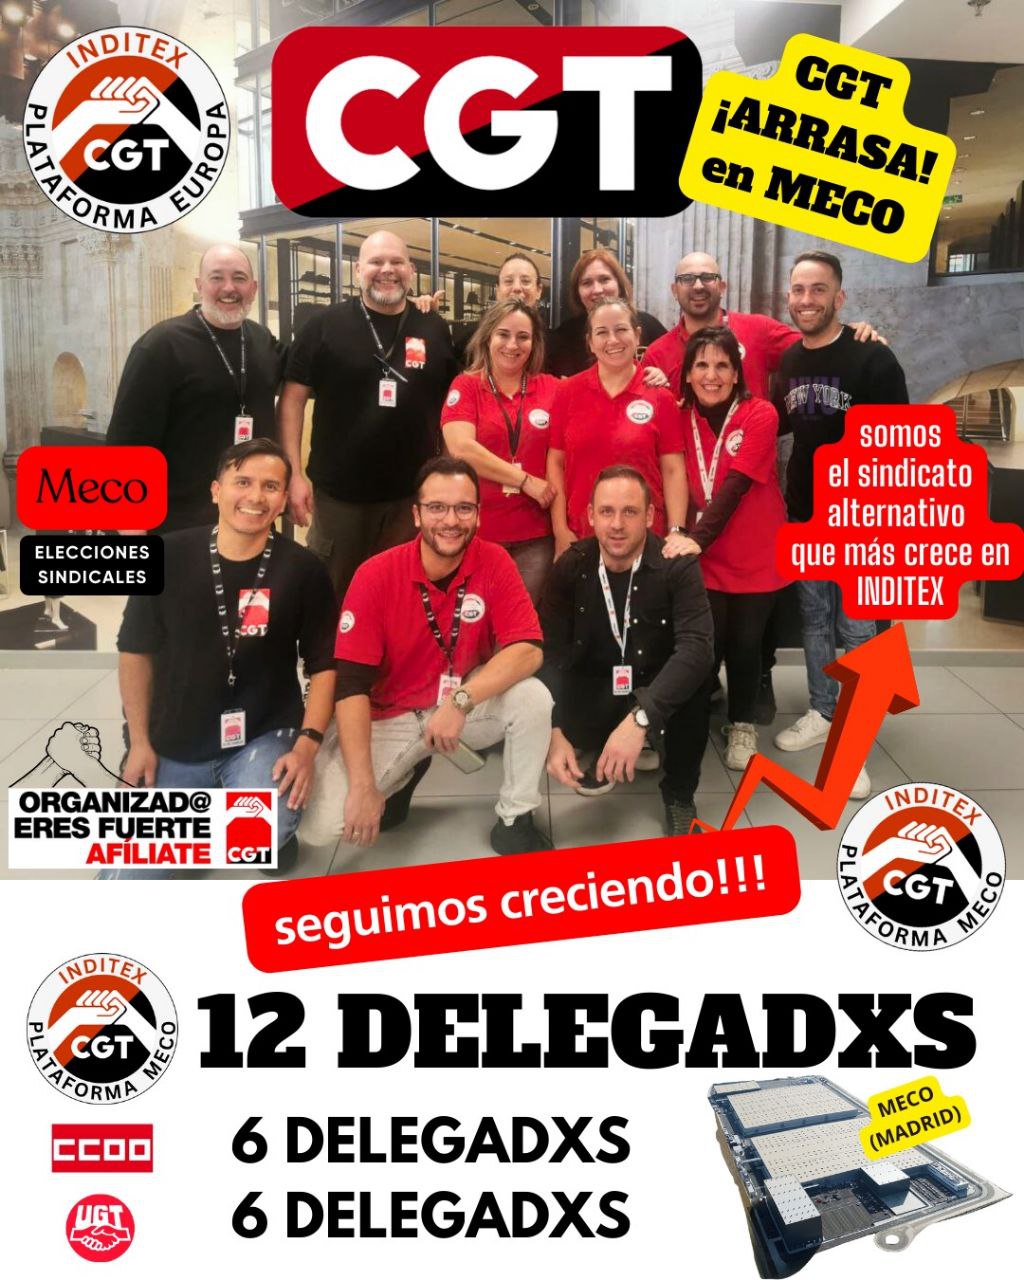 La CGT, el sindicato alternativo que más crece en INDITEX a nivel nacional